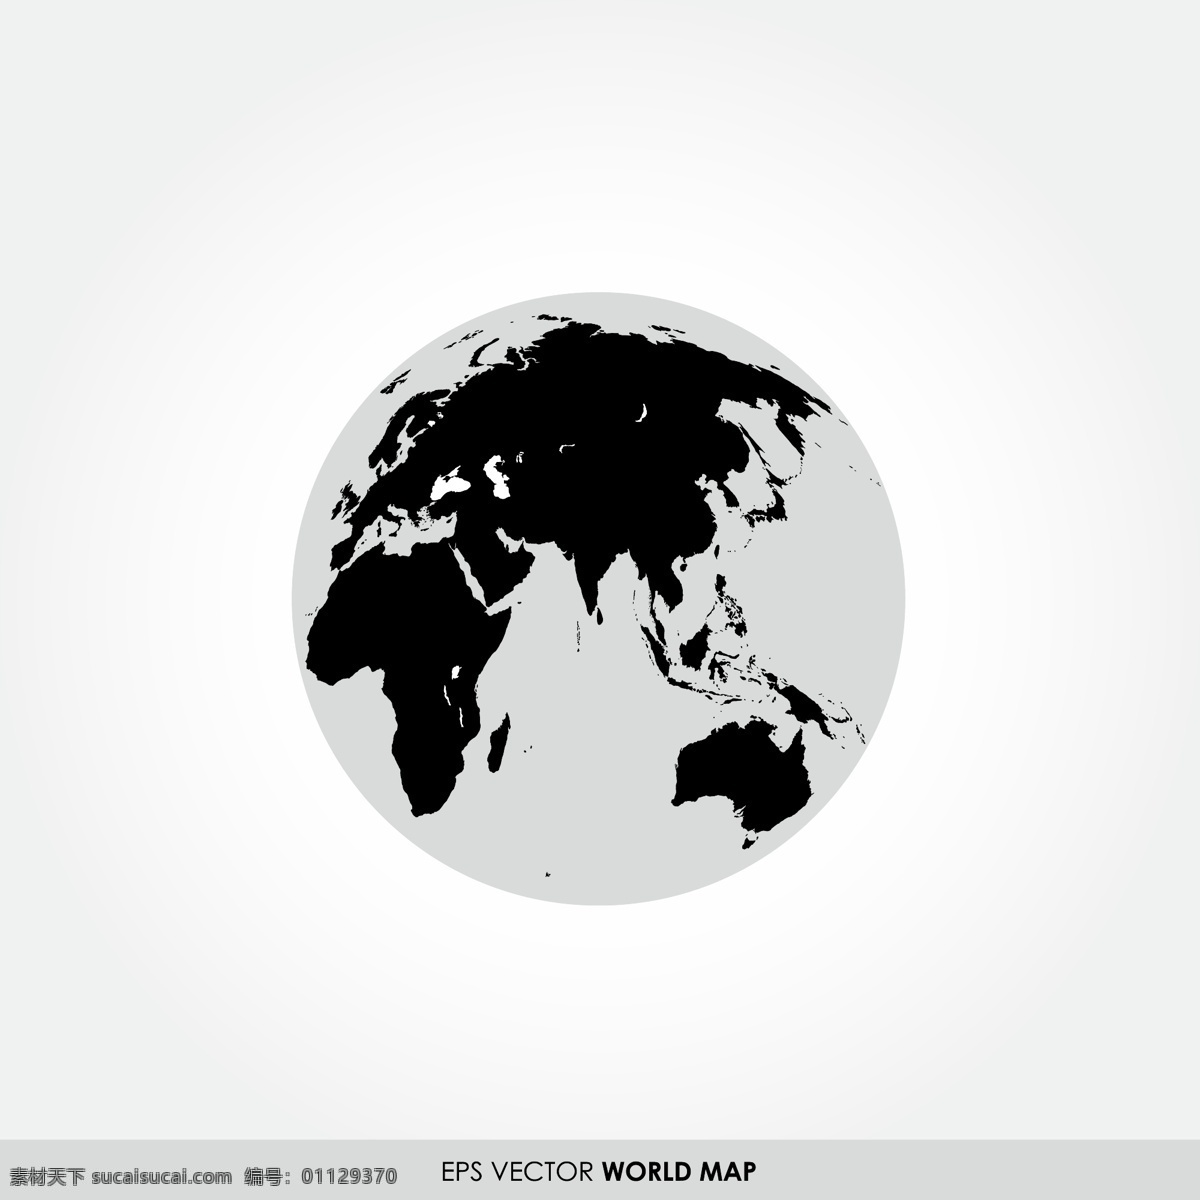 矢量地球 卡通地球 地球插图 创意地球 黑白创意地球 地球 星球 生活百科 矢量素材 白色